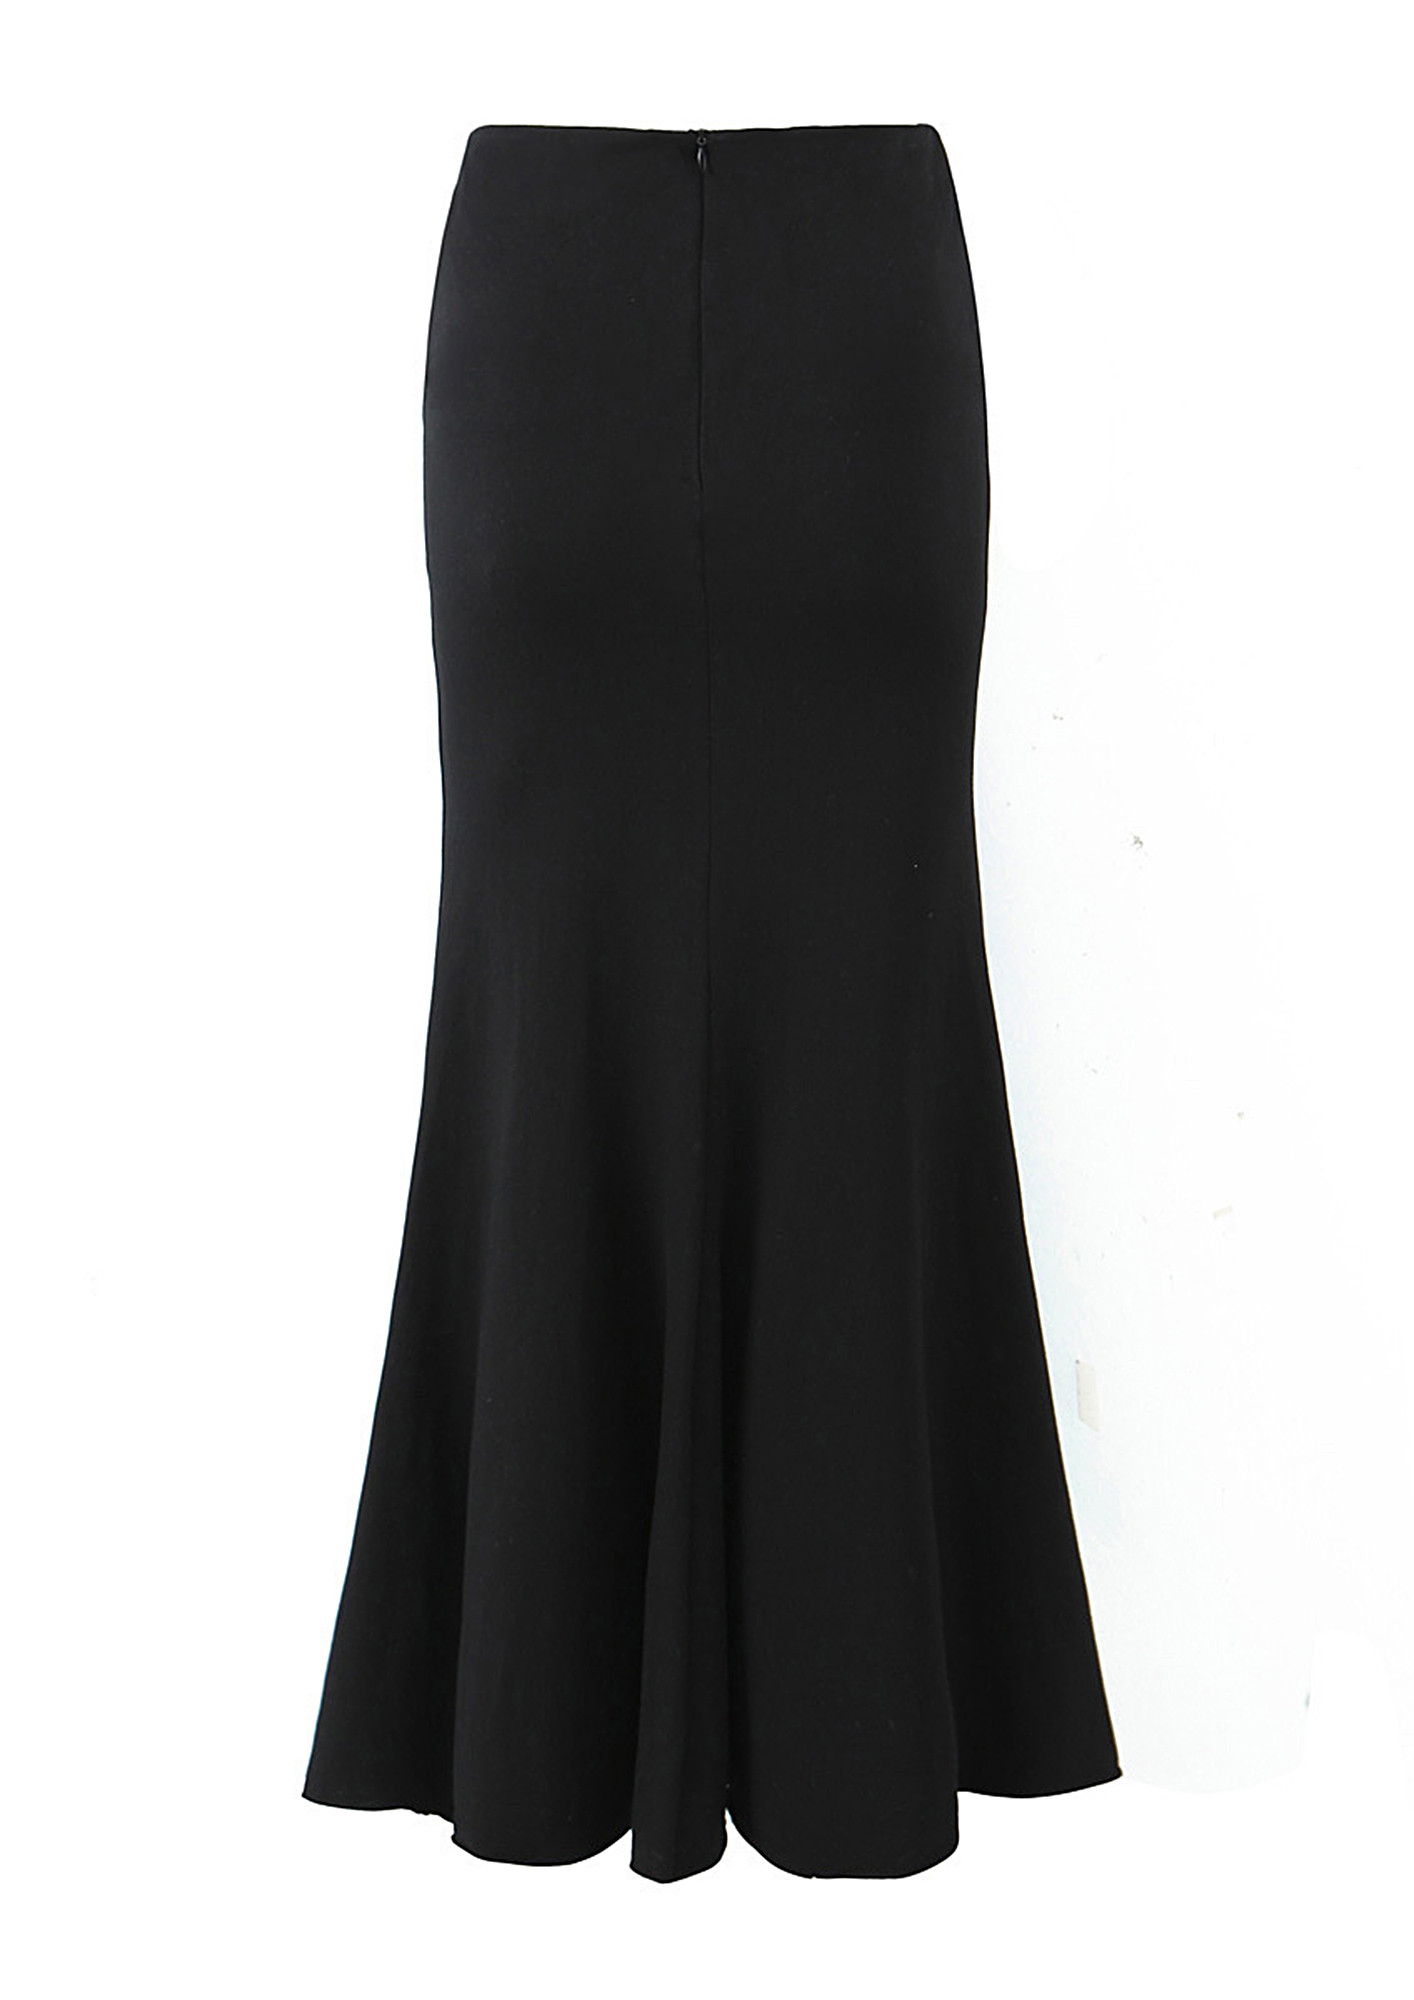 Black skirt with tulle – Varteks d.d.